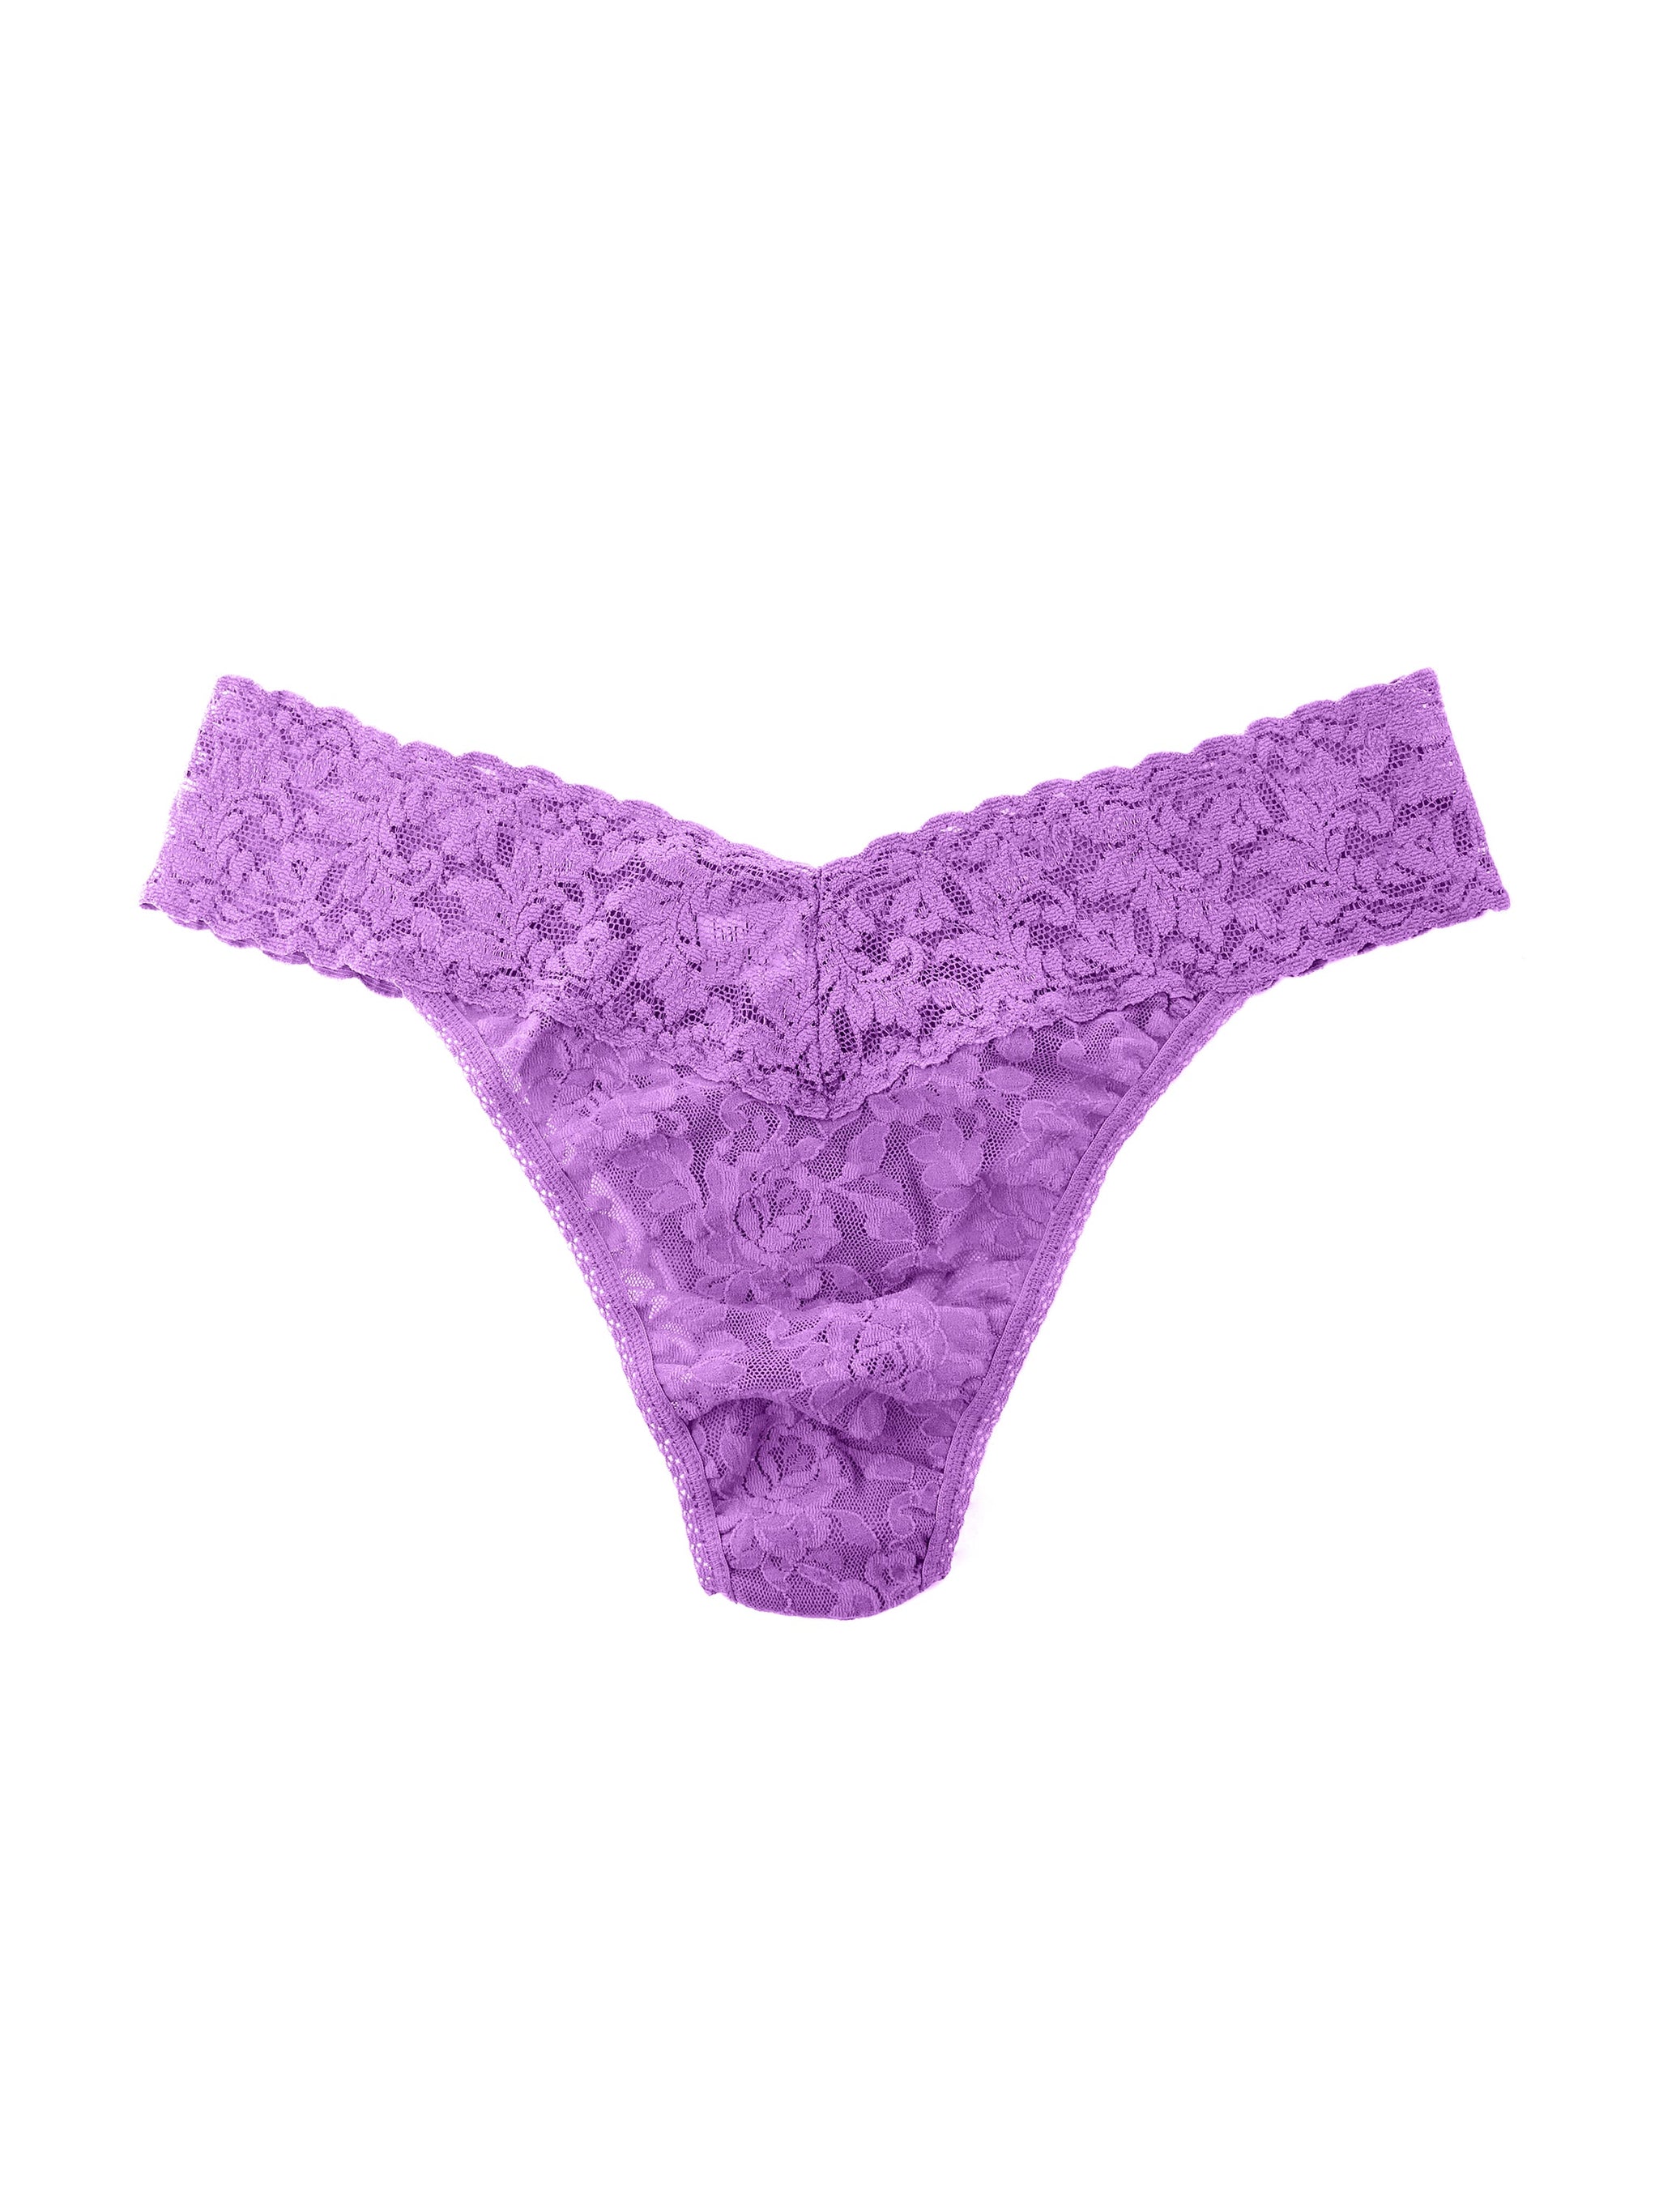 Signature Lace Original Rise Thong Candied Violet Purple